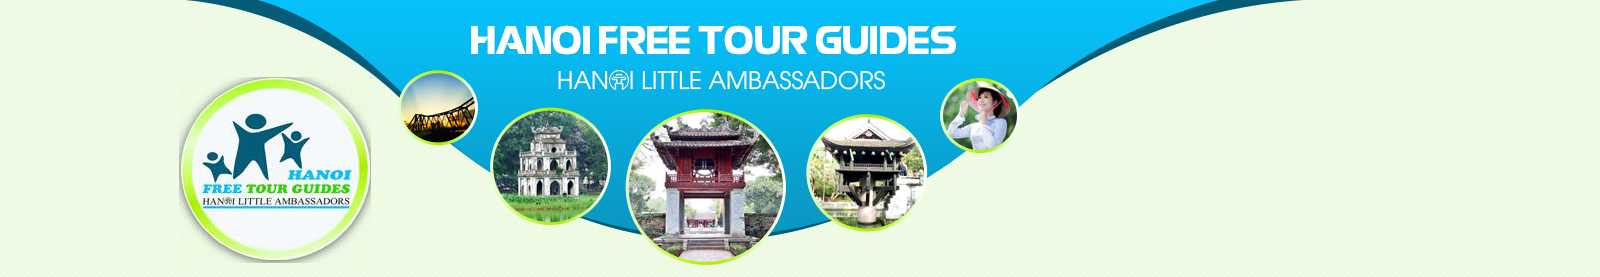 Hanoi Free Tour Guides